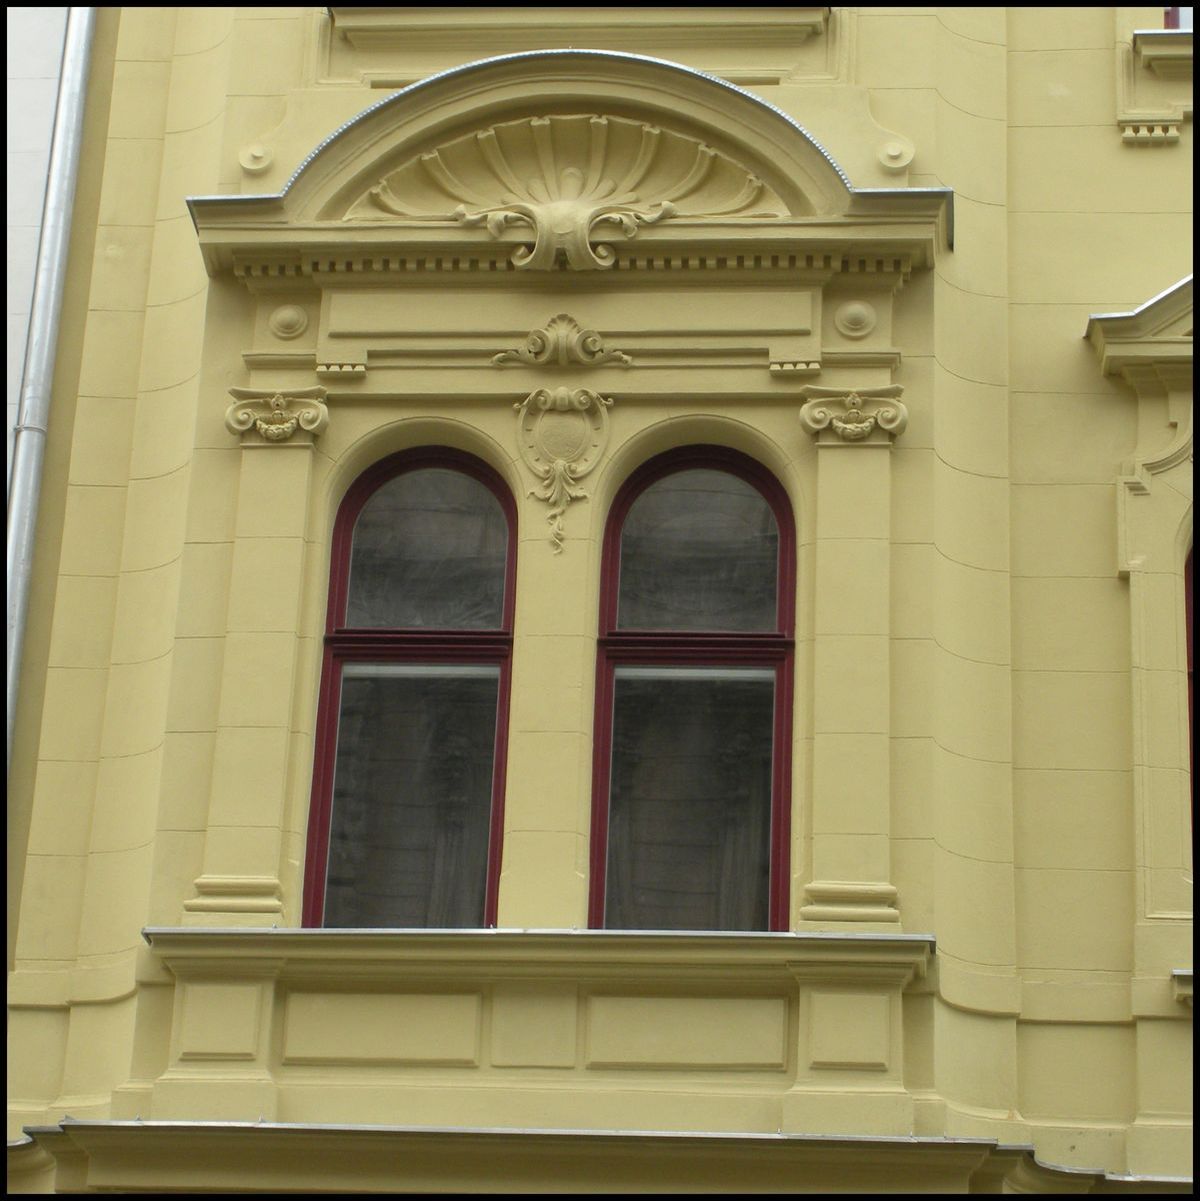 Oblouková kastlová okna čelní fasády vzhledem shodná s původními okny - jsou tvořená eurookny IV-68 a jednoduchými vnitřními křídly